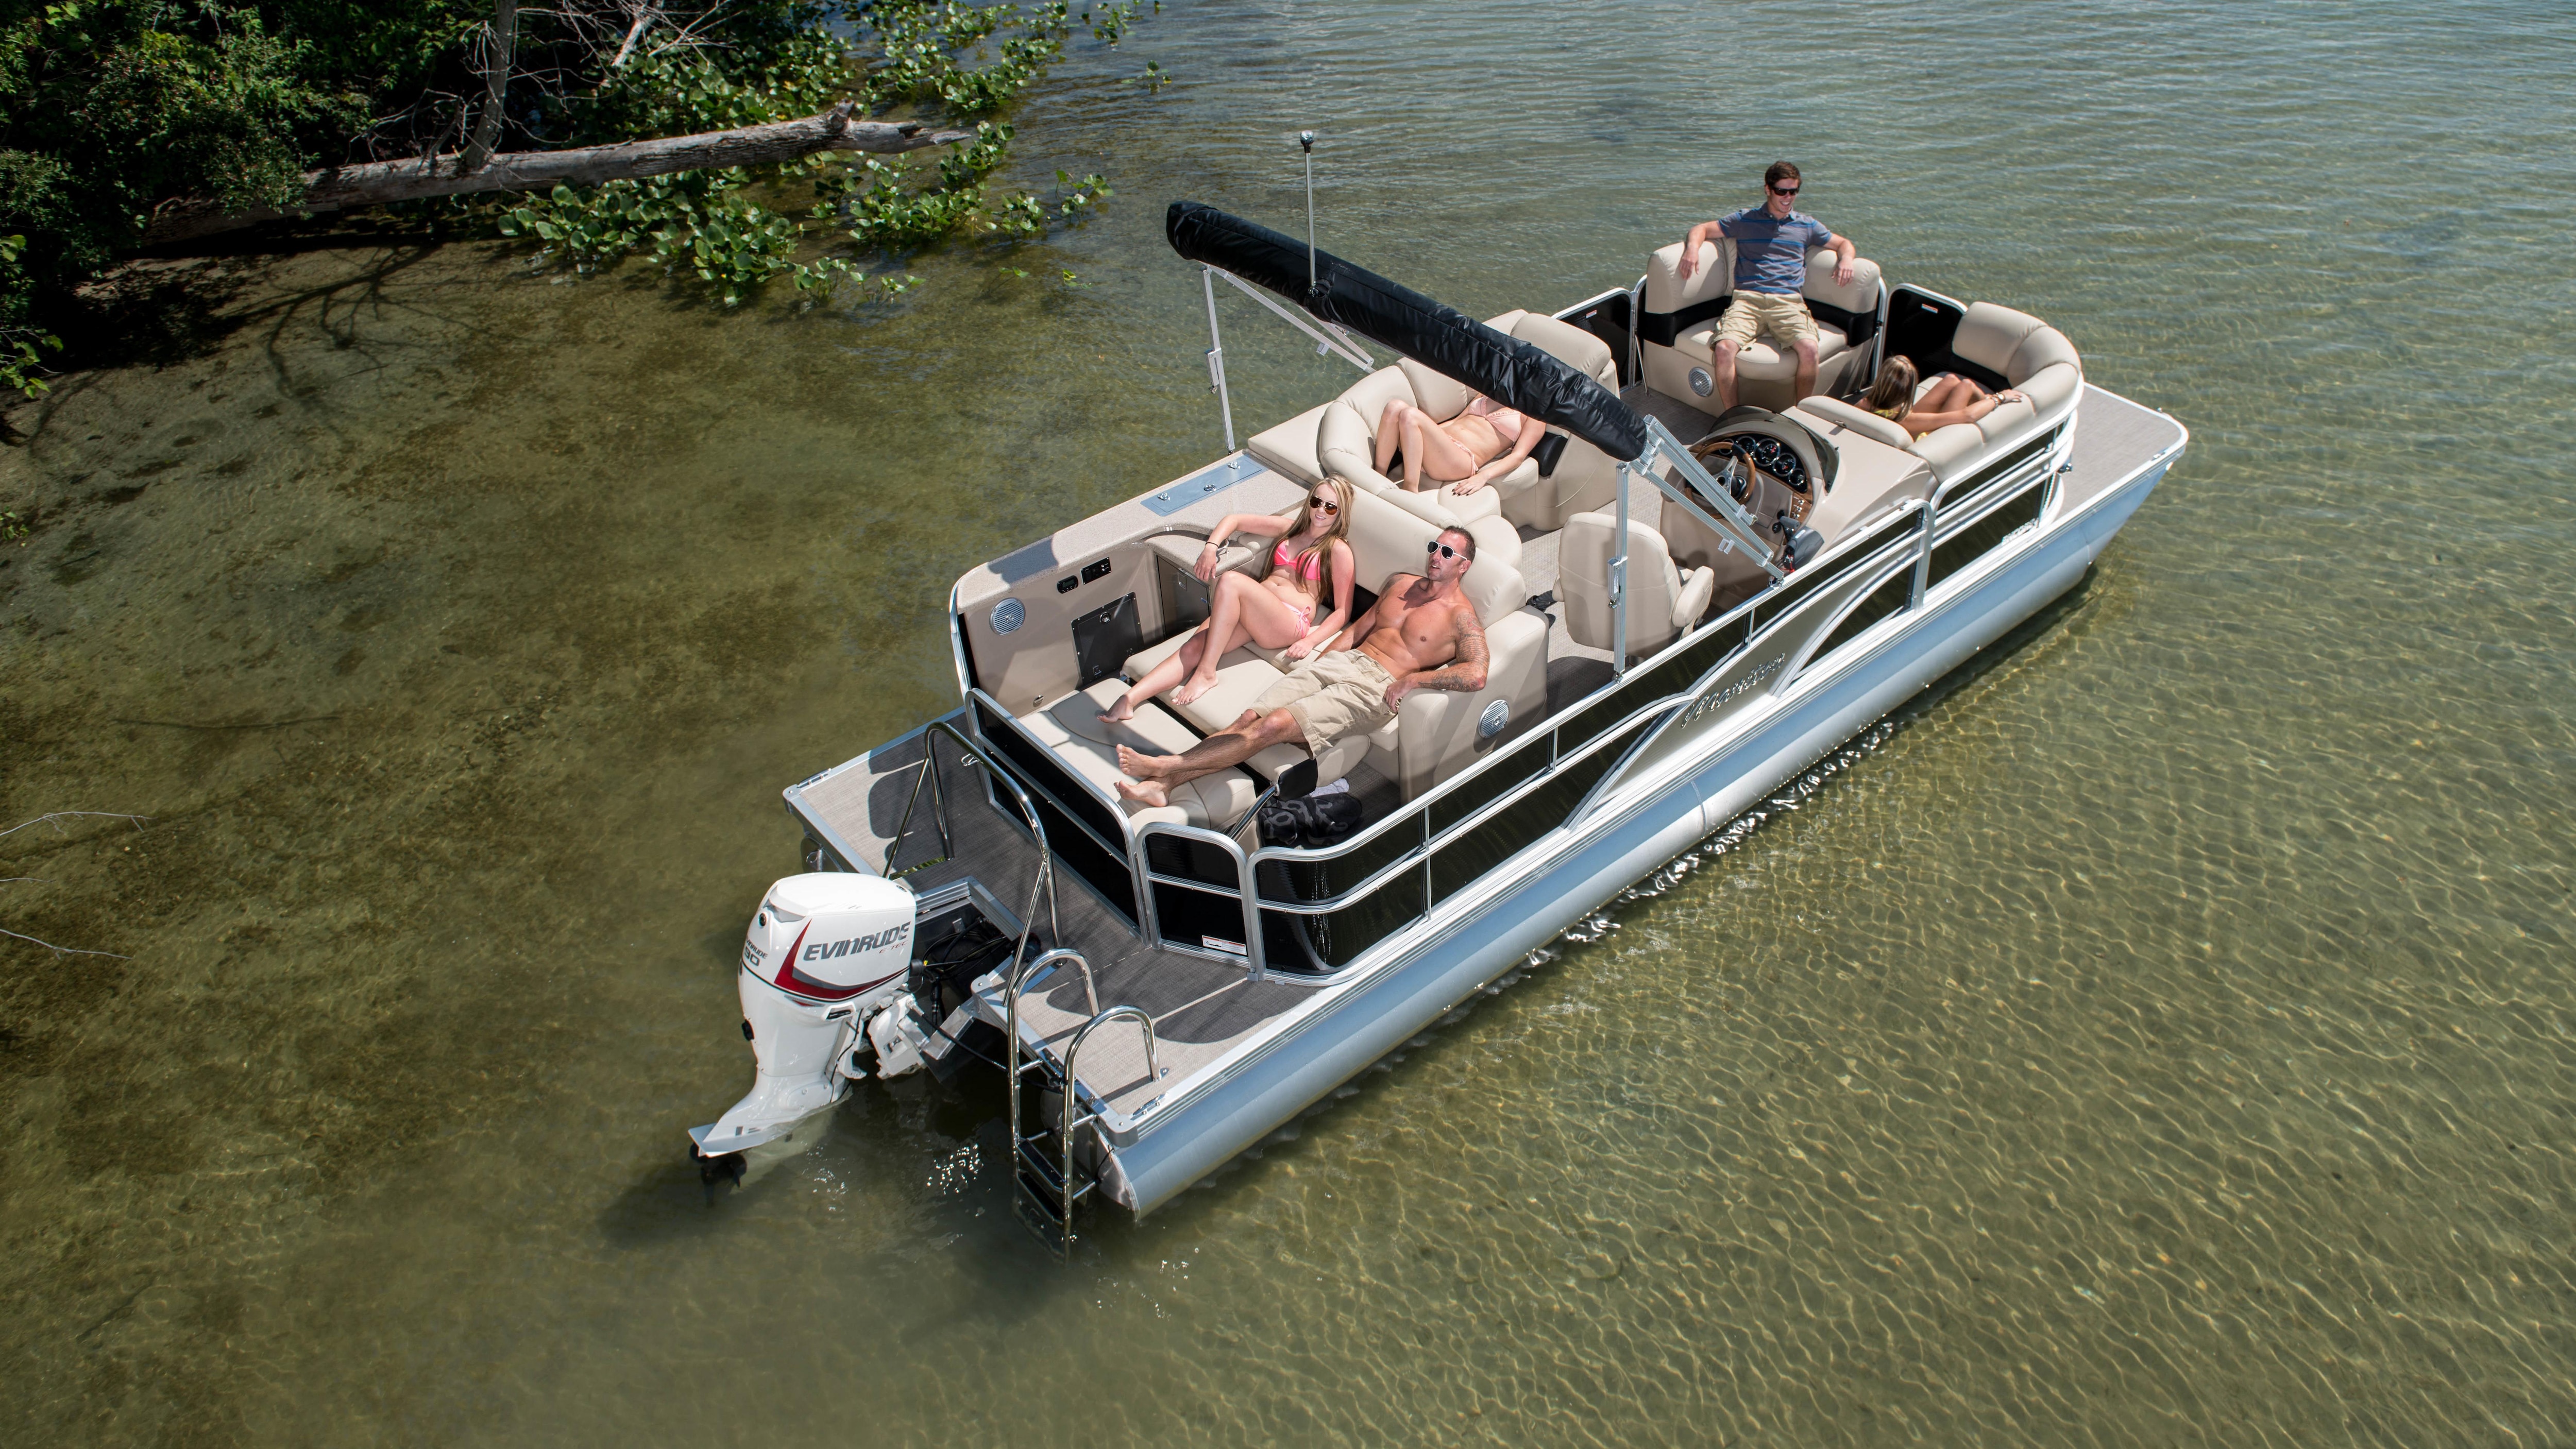 Grupa przyjaciół relaksujących się na łodzi z silnikiem Evinrude